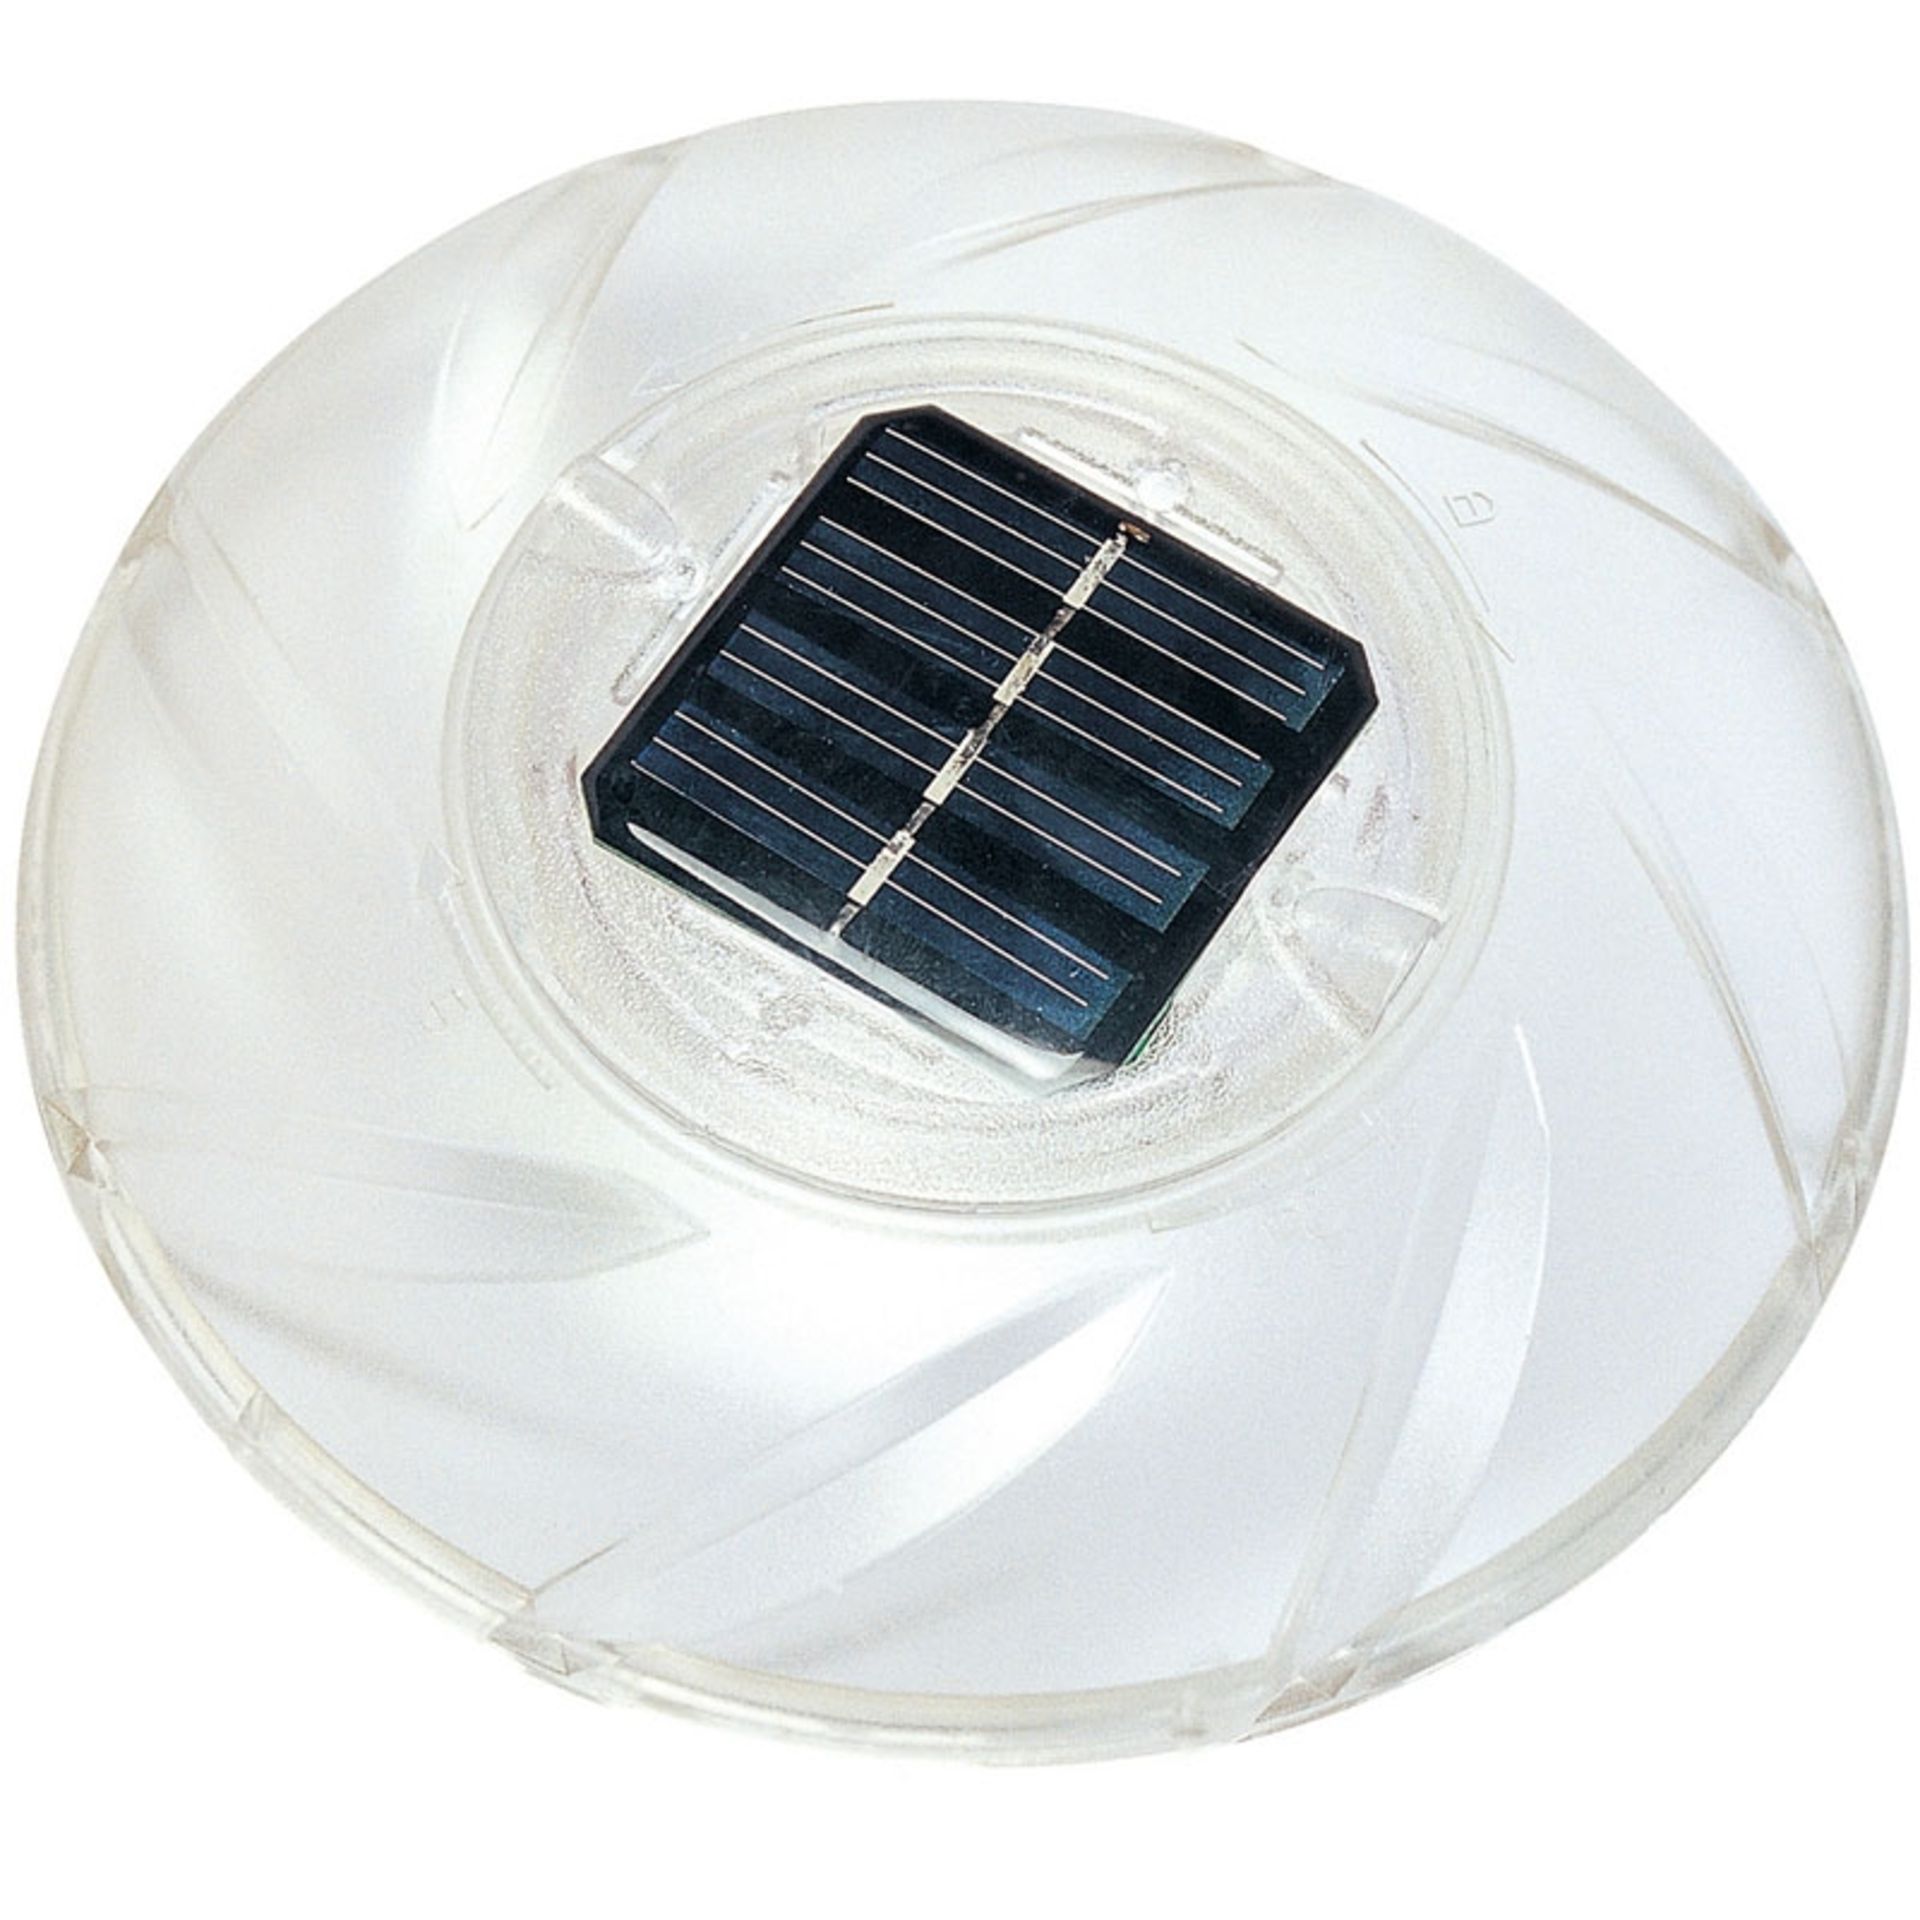 10 x Bestway Flowclear Solar Float Lamp | 58111 - Image 2 of 2